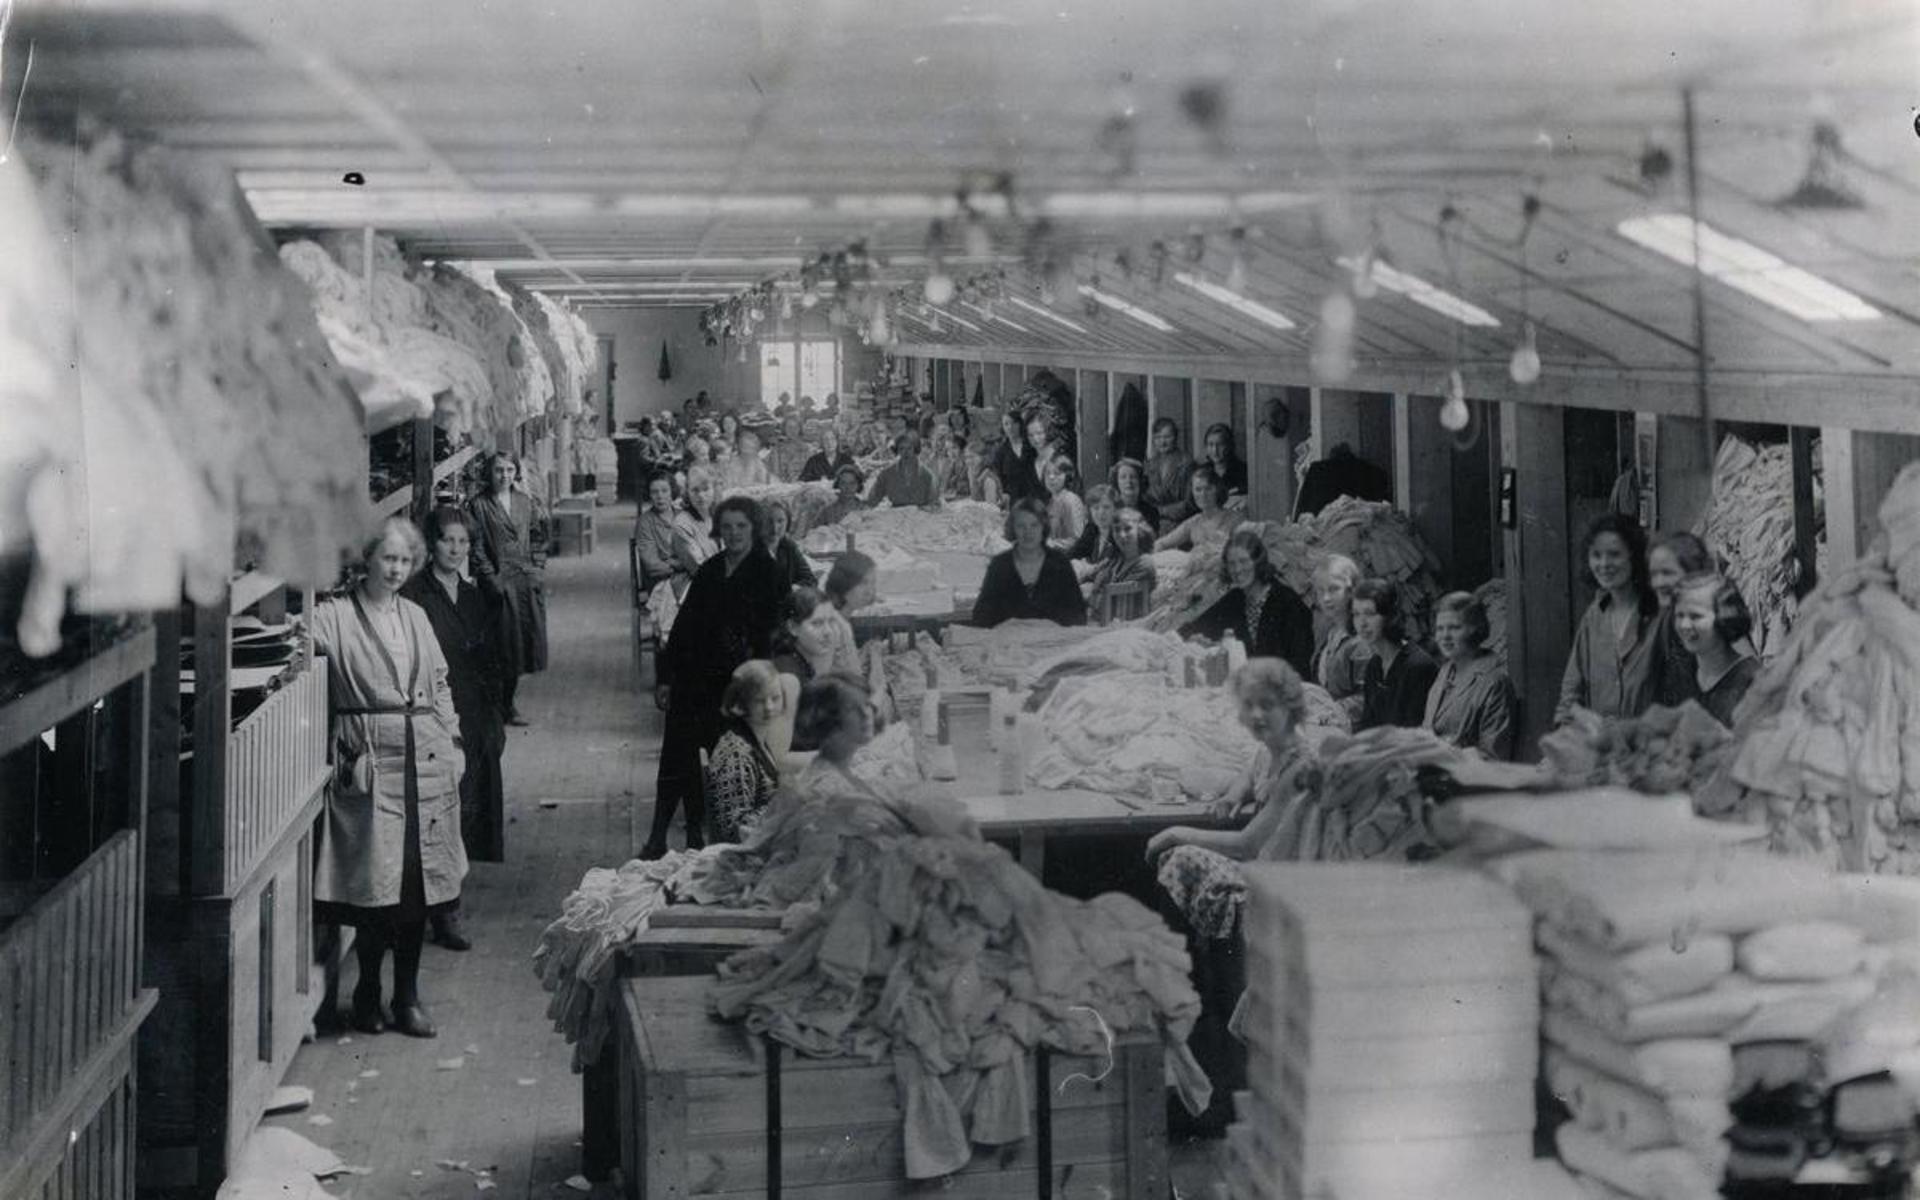 Kvinnliga fabriksarbetare står uppställda för fotografering i fabrikslokal på &quot;Strumpan&quot; (Viktor Samuelsons fabrik), okänt årtal.